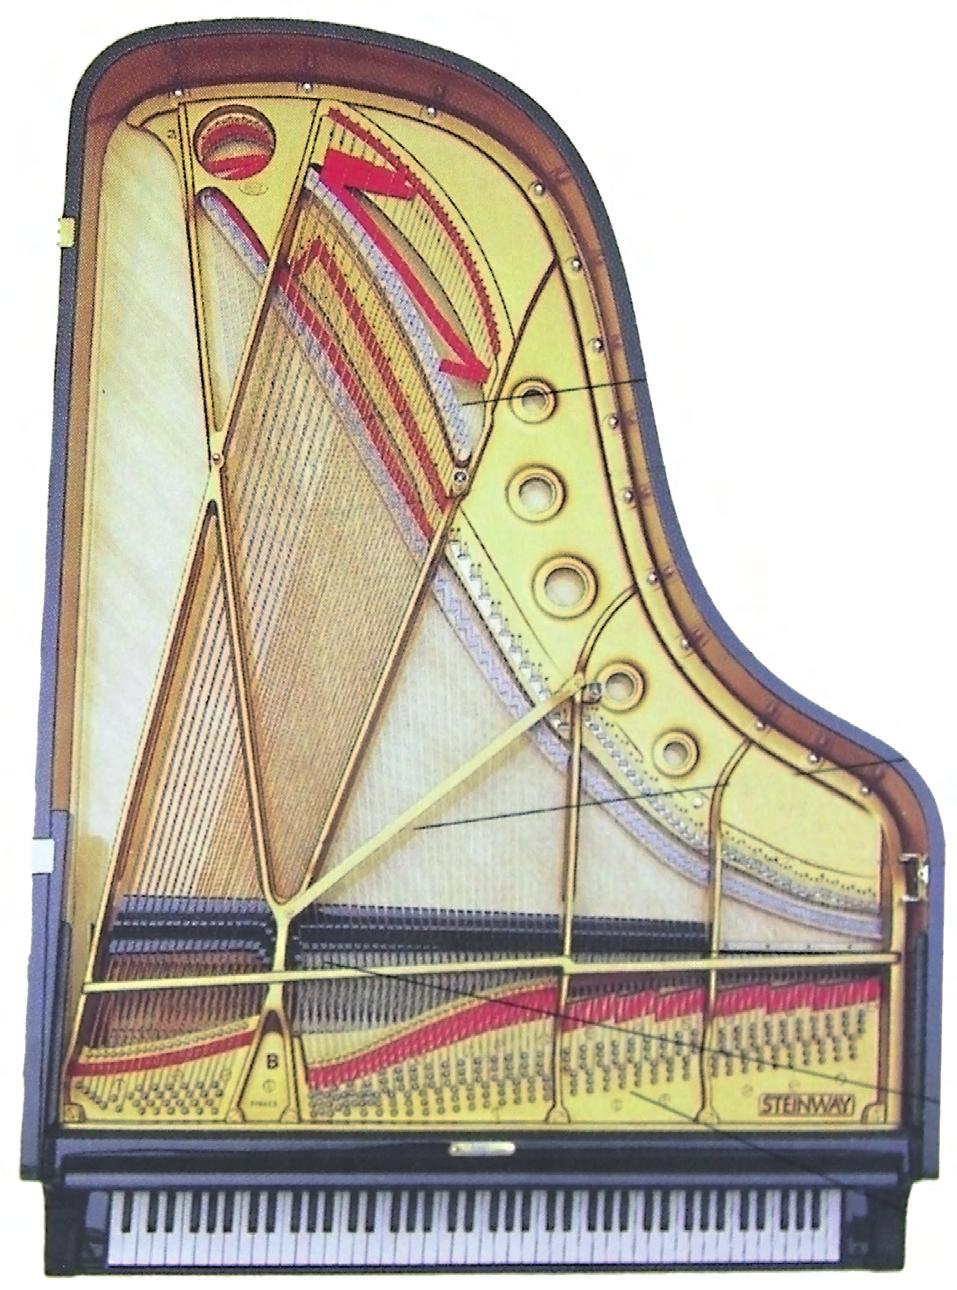 10 Relaciona: clavicordio martillos de fieltro piano pinzado